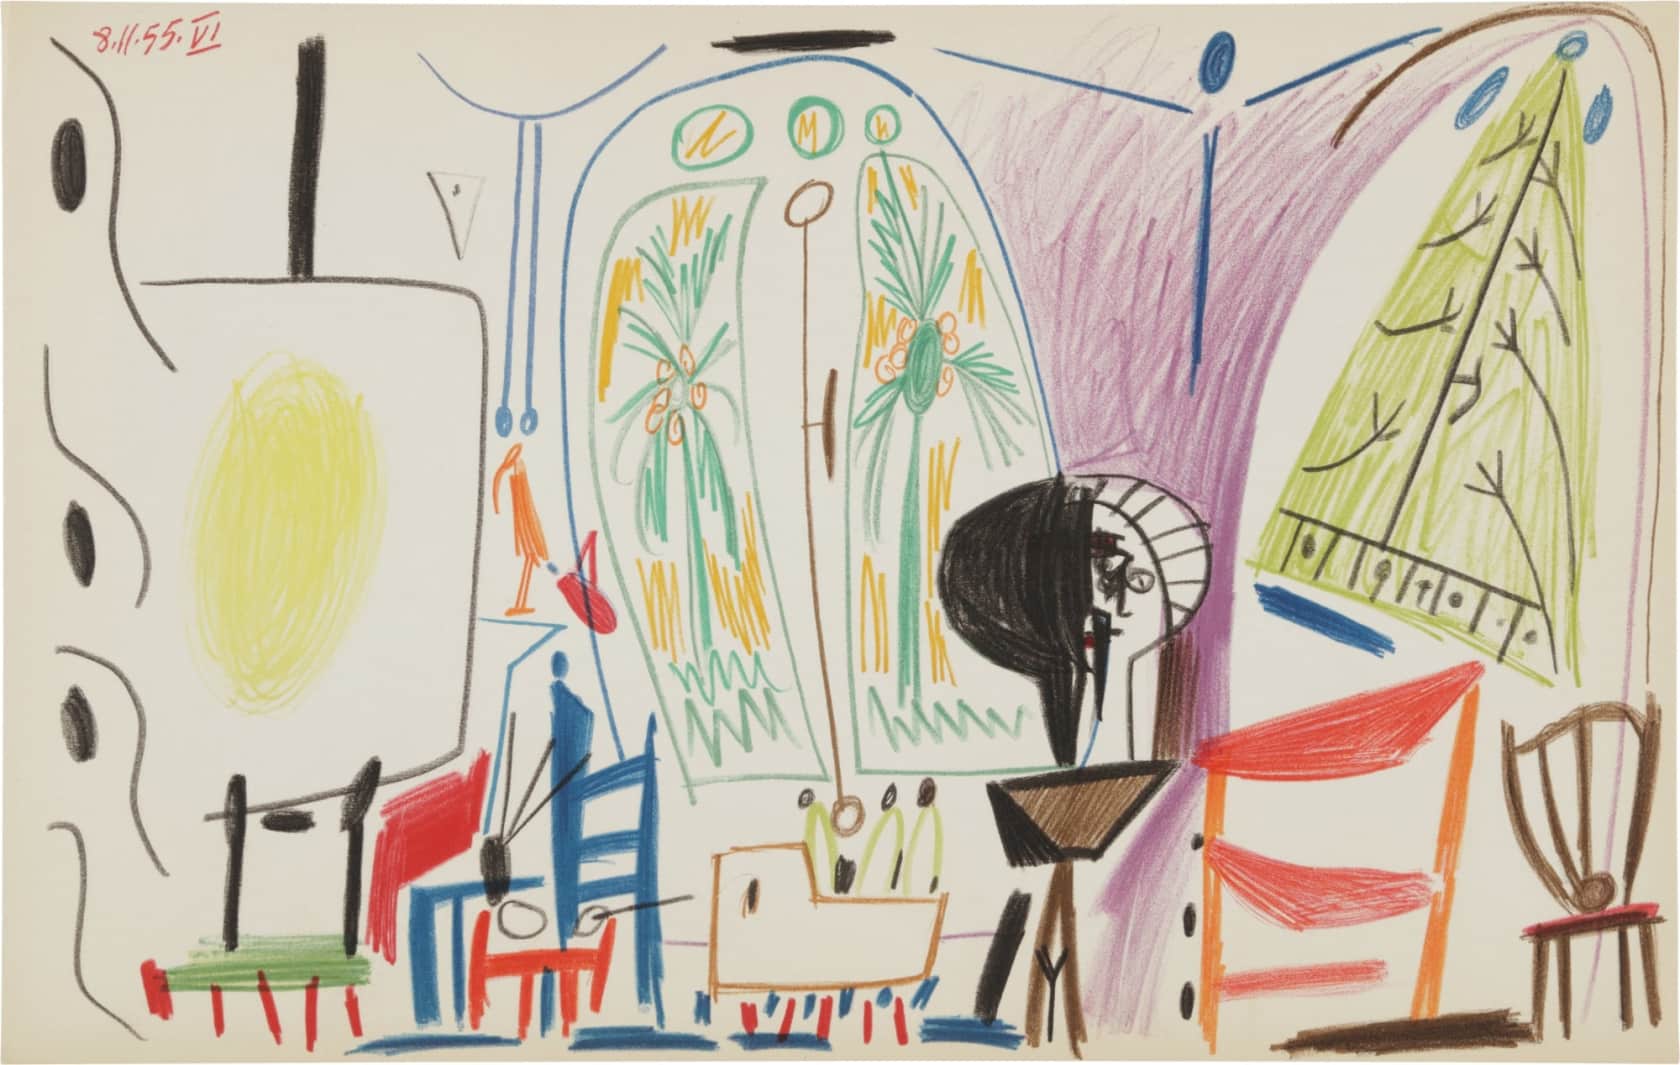 Pablo Picasso, Carnet de la Californie Lithograph (21.11.55 VI), 1959